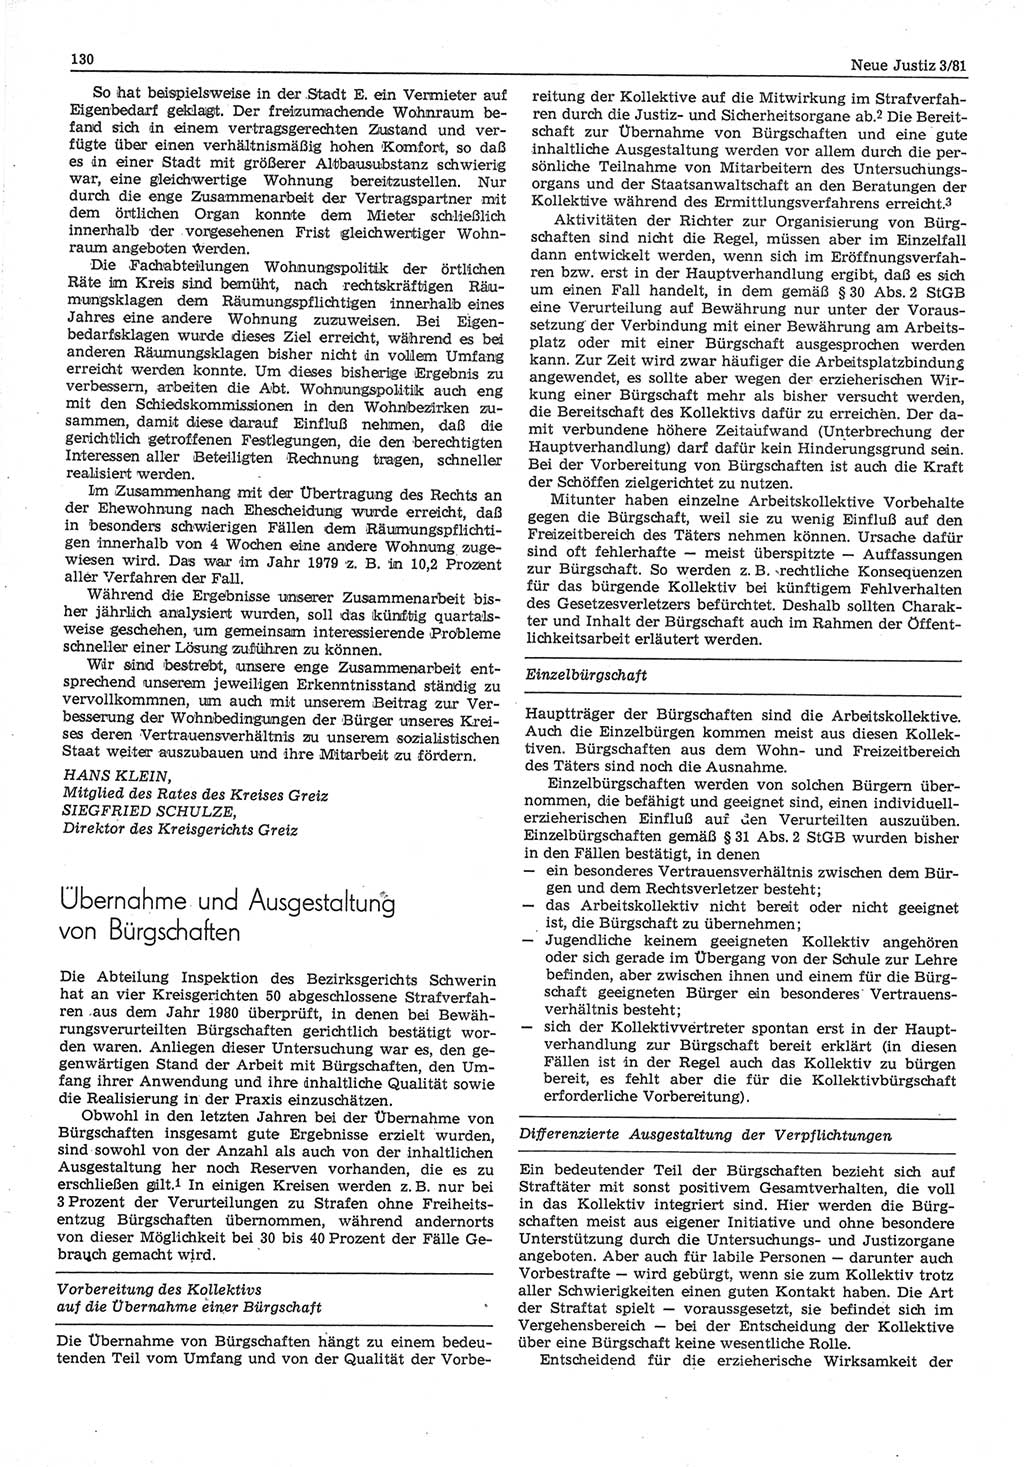 Neue Justiz (NJ), Zeitschrift für sozialistisches Recht und Gesetzlichkeit [Deutsche Demokratische Republik (DDR)], 35. Jahrgang 1981, Seite 130 (NJ DDR 1981, S. 130)